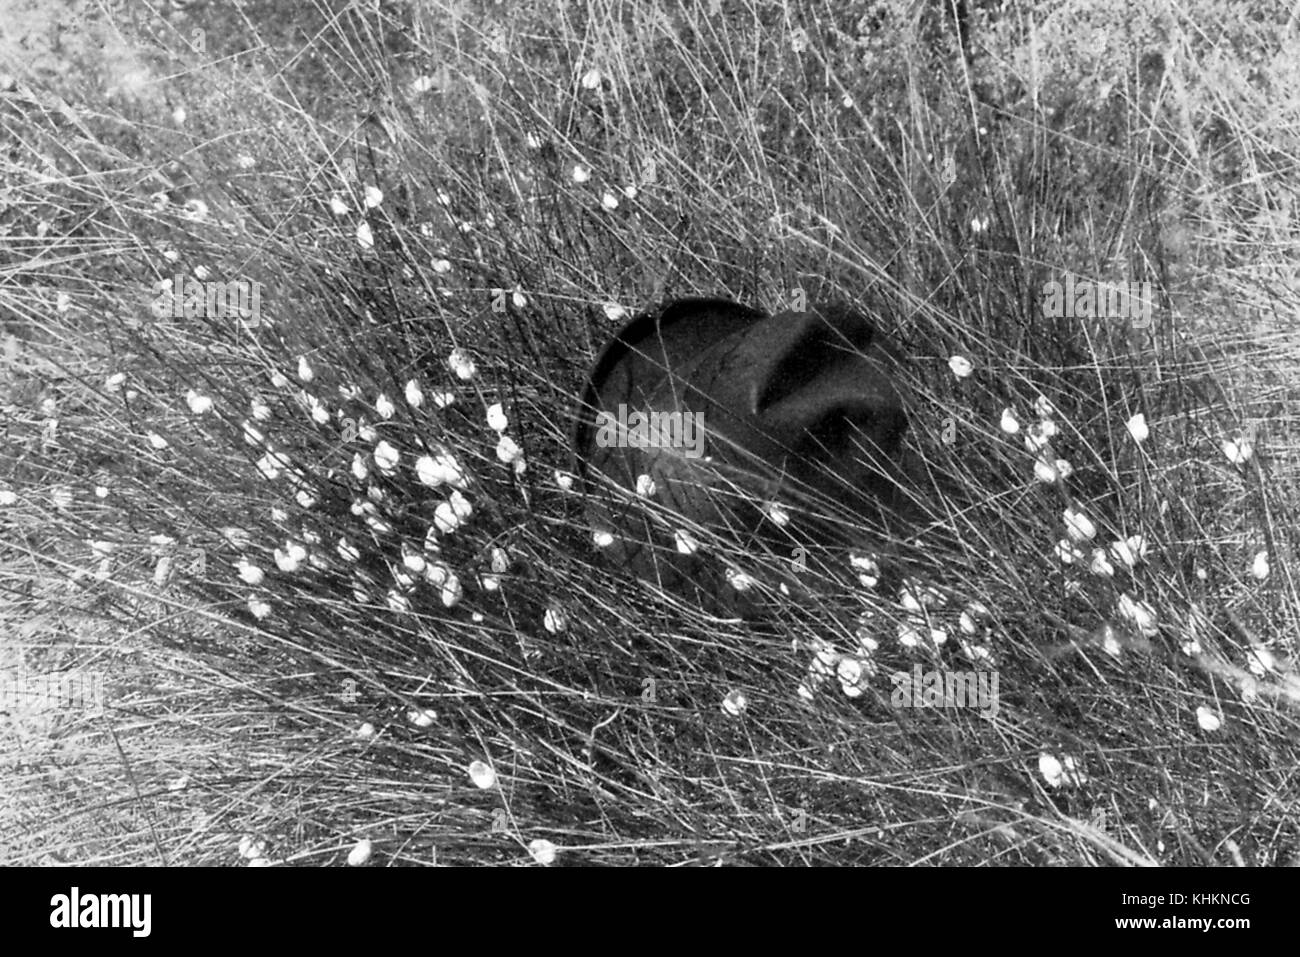 Ein Foto zeigt, dass hohe Gras von Schnecken geklettert, die Schnecken im Bild sind essbar und in der Region gegessen, der Hut im Rahmen gesetzt war ein Bezugspunkt für den Betrachter die Größe der Schnecken, Camargue, Frankreich zu beurteilen, Juli, 1922. Stockfoto